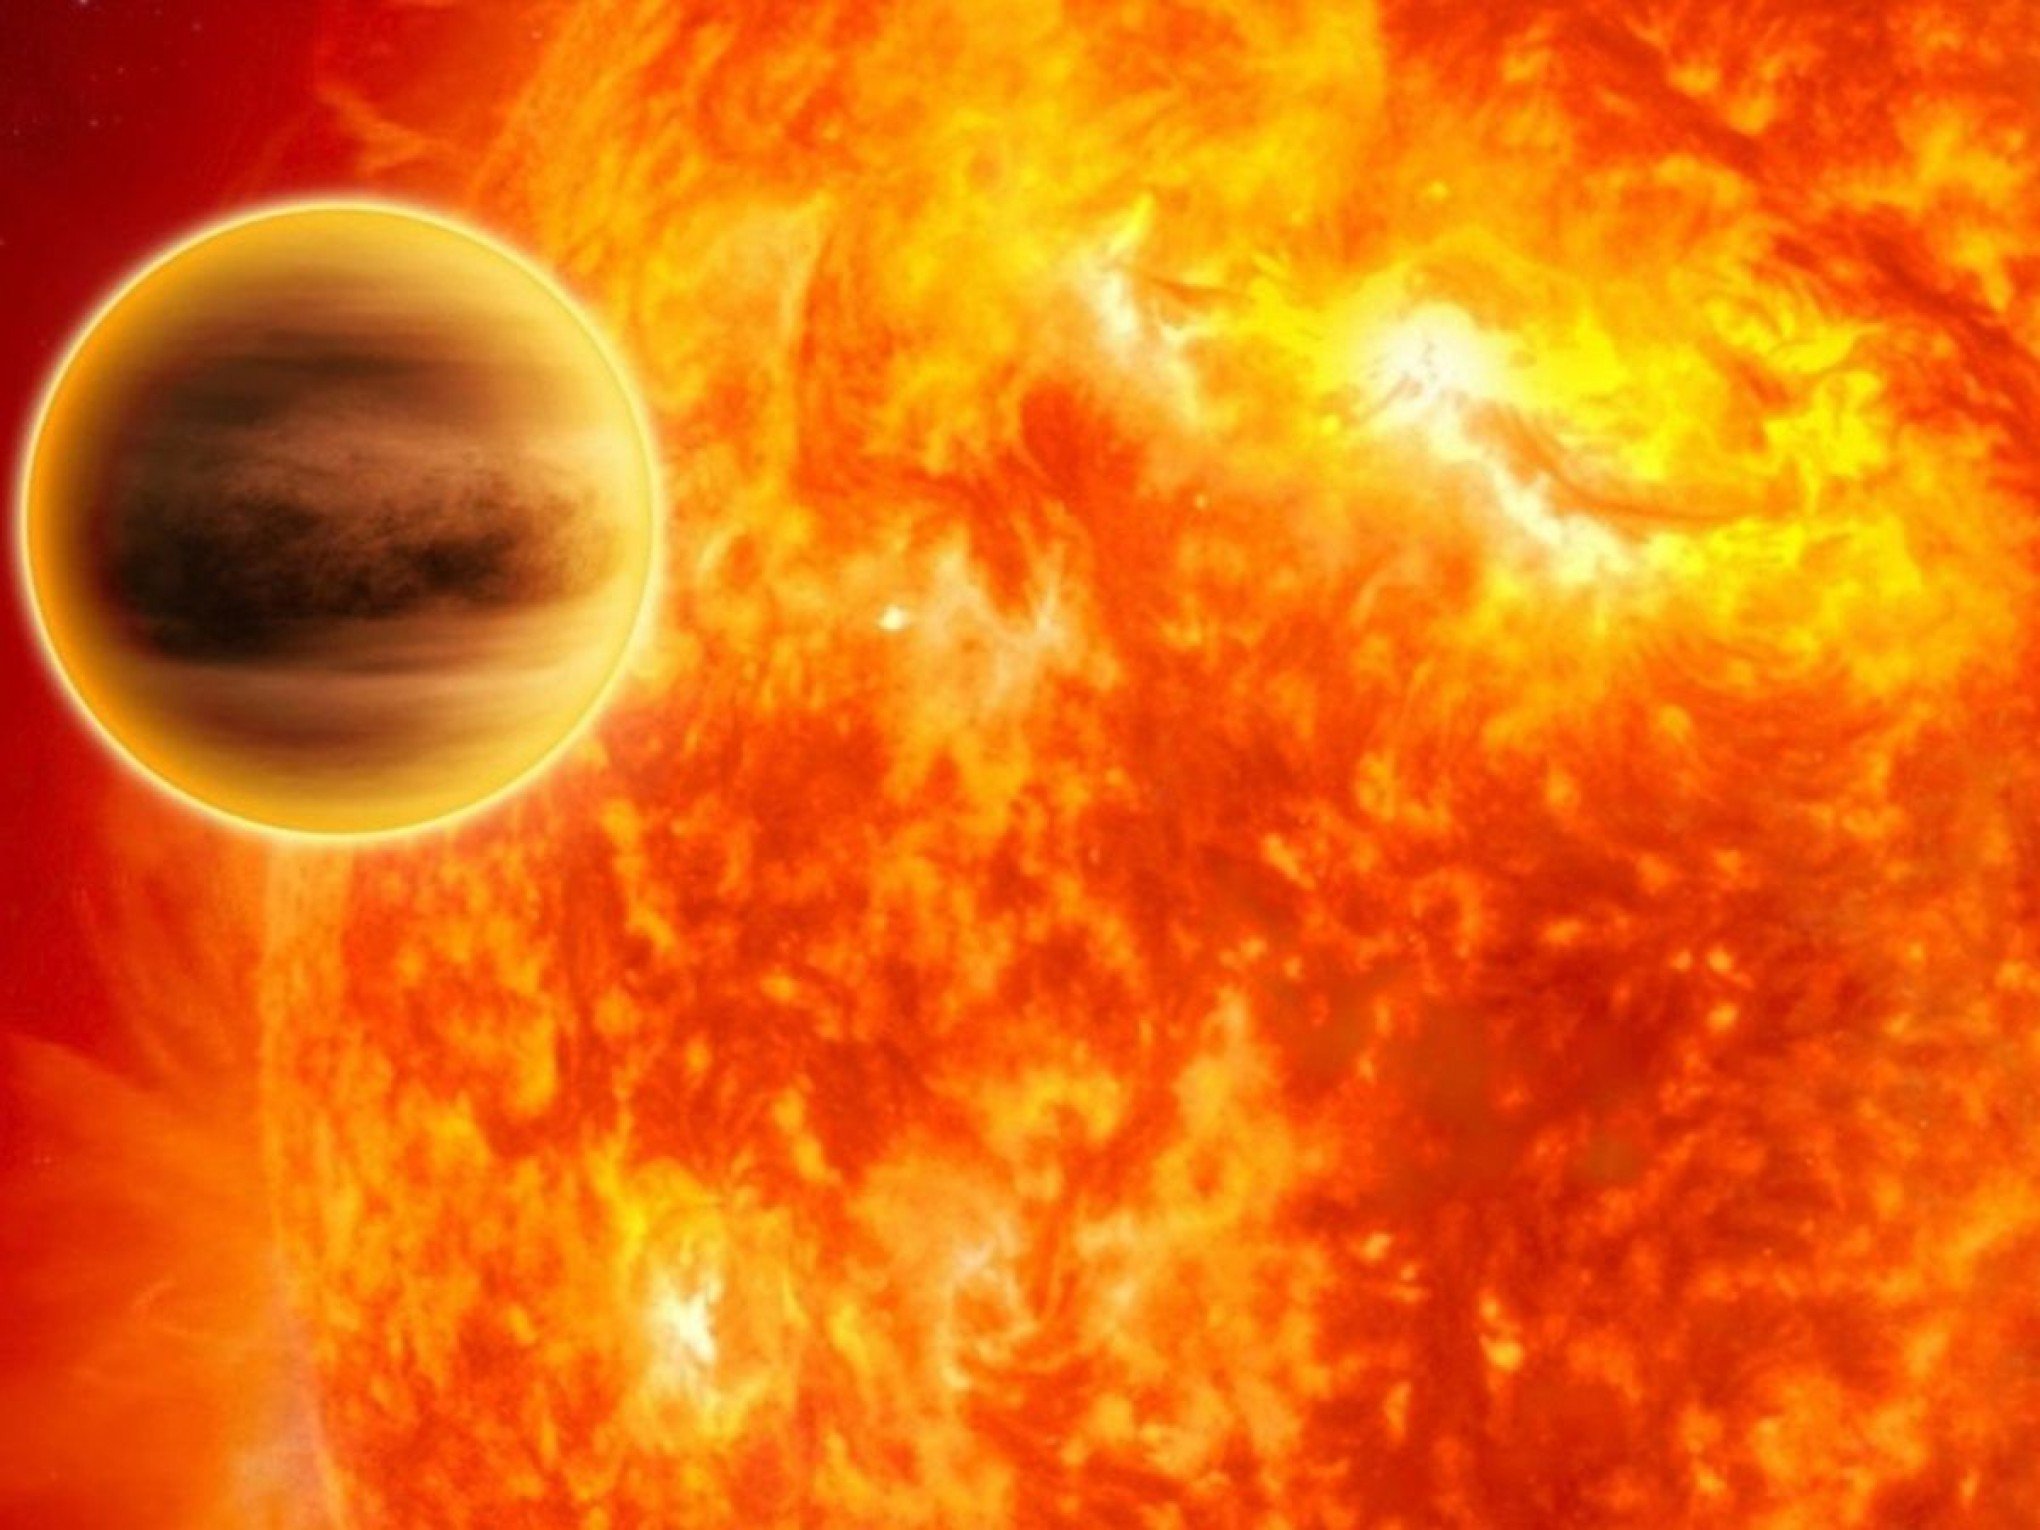 PRÉVIA DO FUTURO DA TERRA: Estrela engole planeta do tamanho de Júpiter